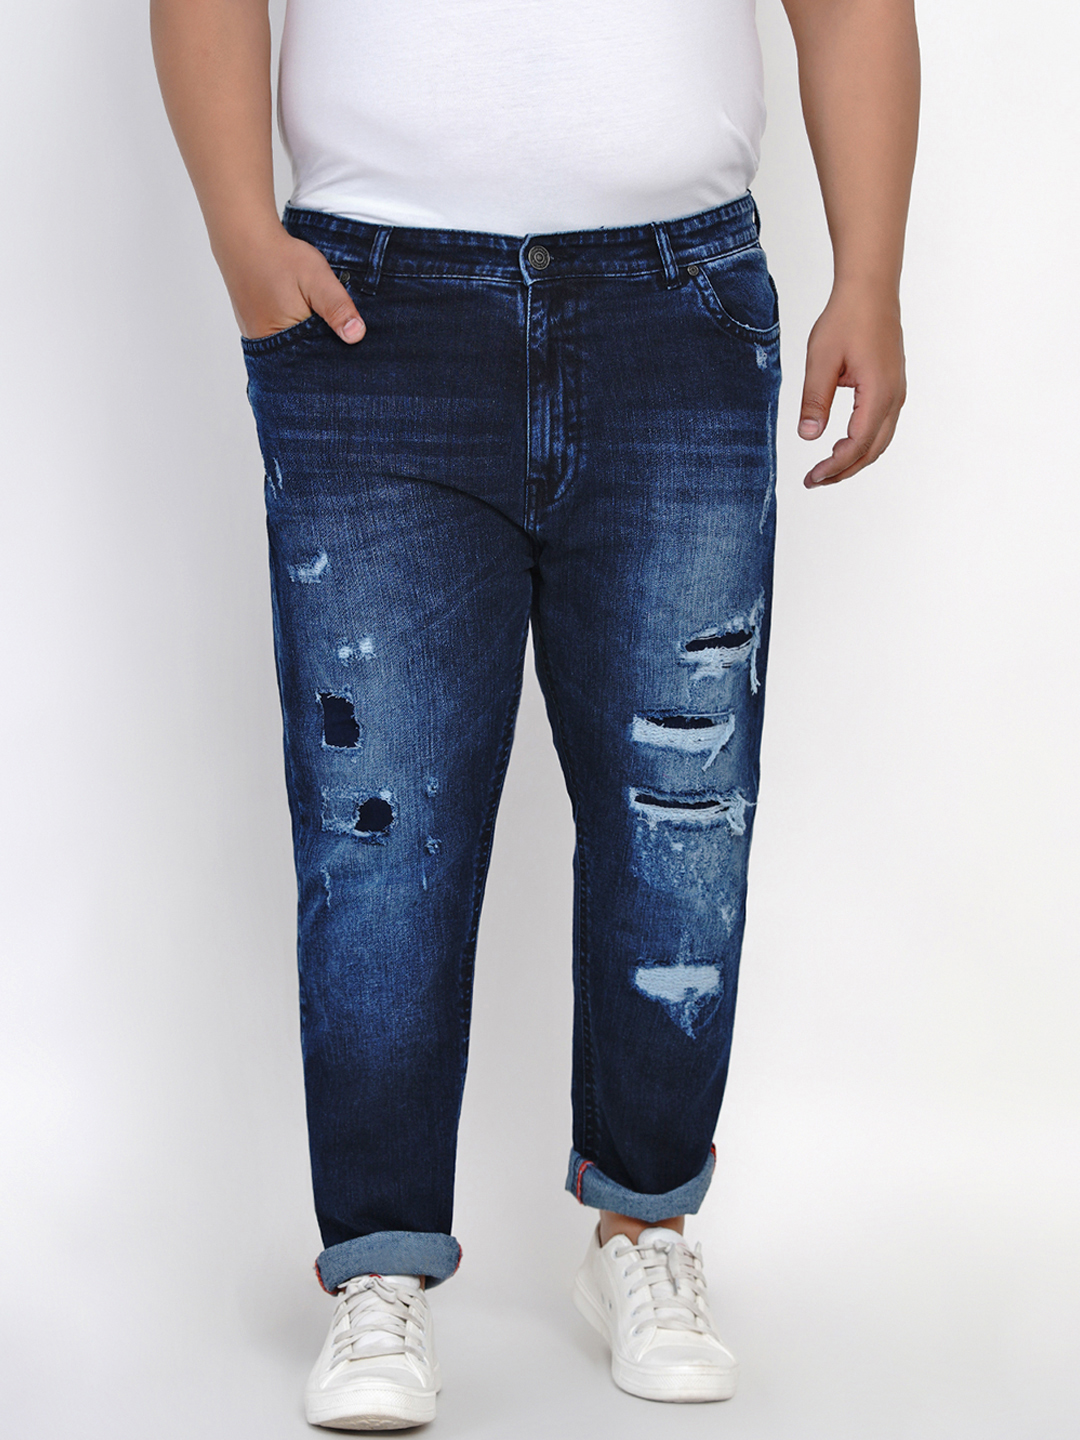 affordables/jeans/JPJ6001/jpj6001-2.jpg